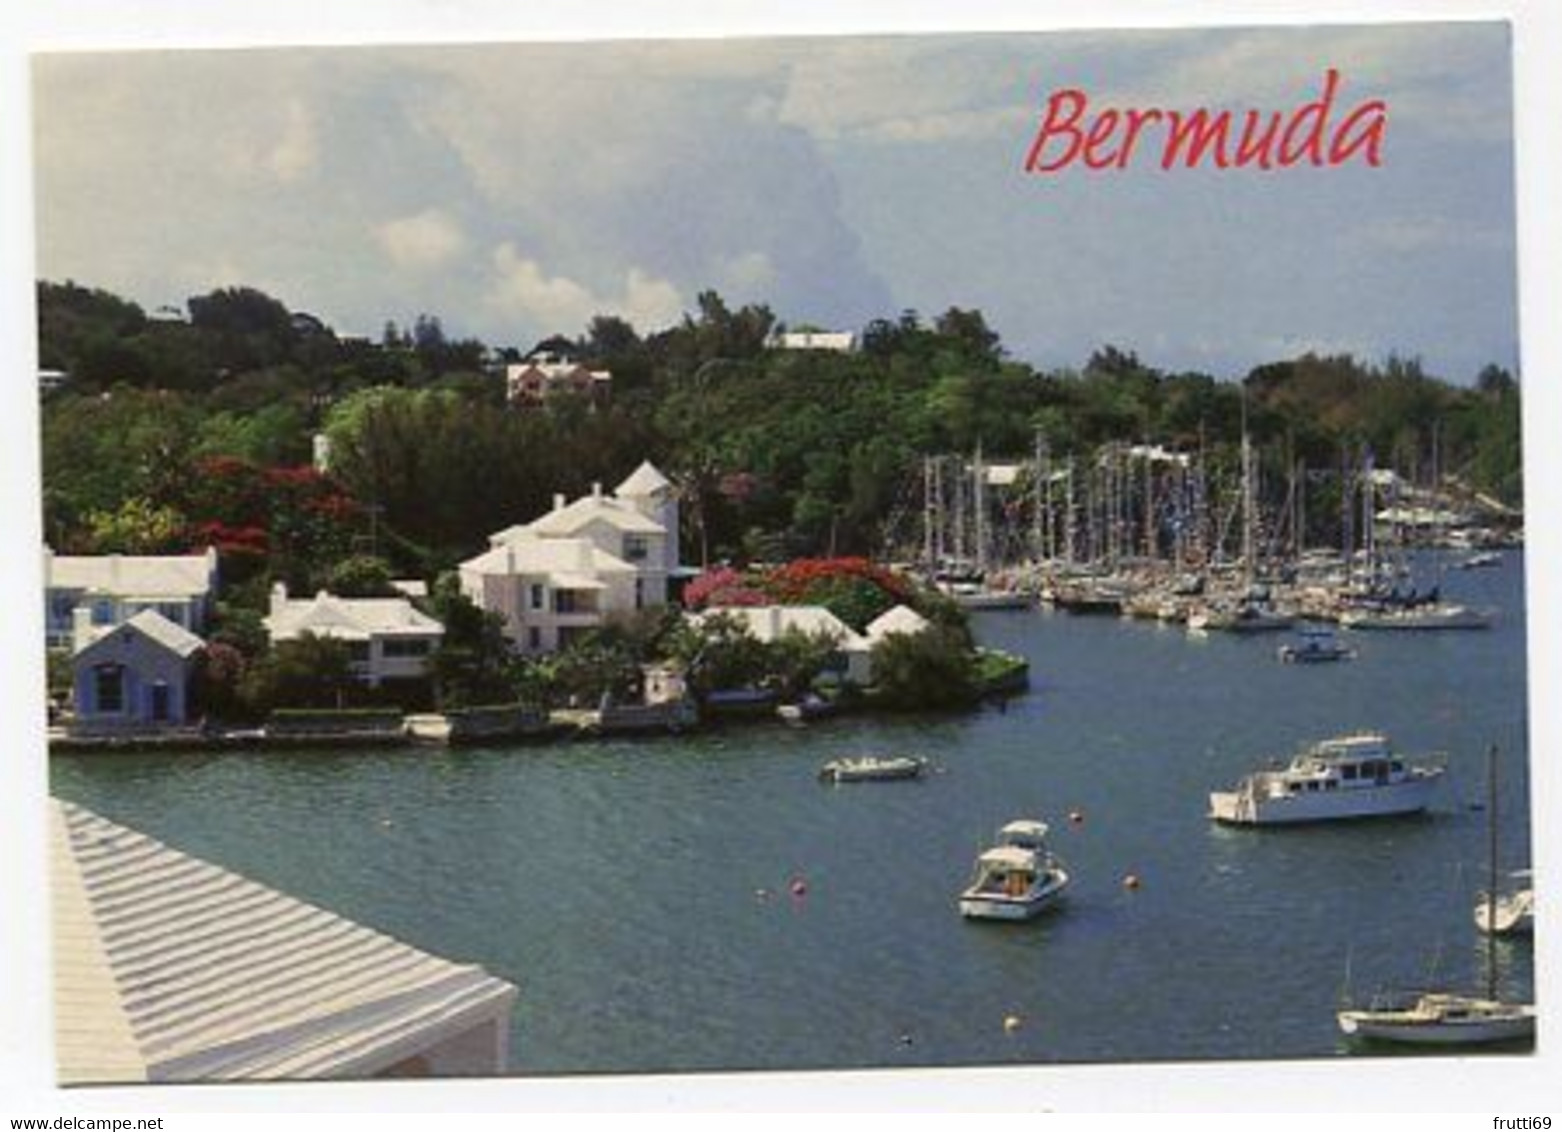 AK 047497 BERMUDA - Horseshoe Bay - Bermuda